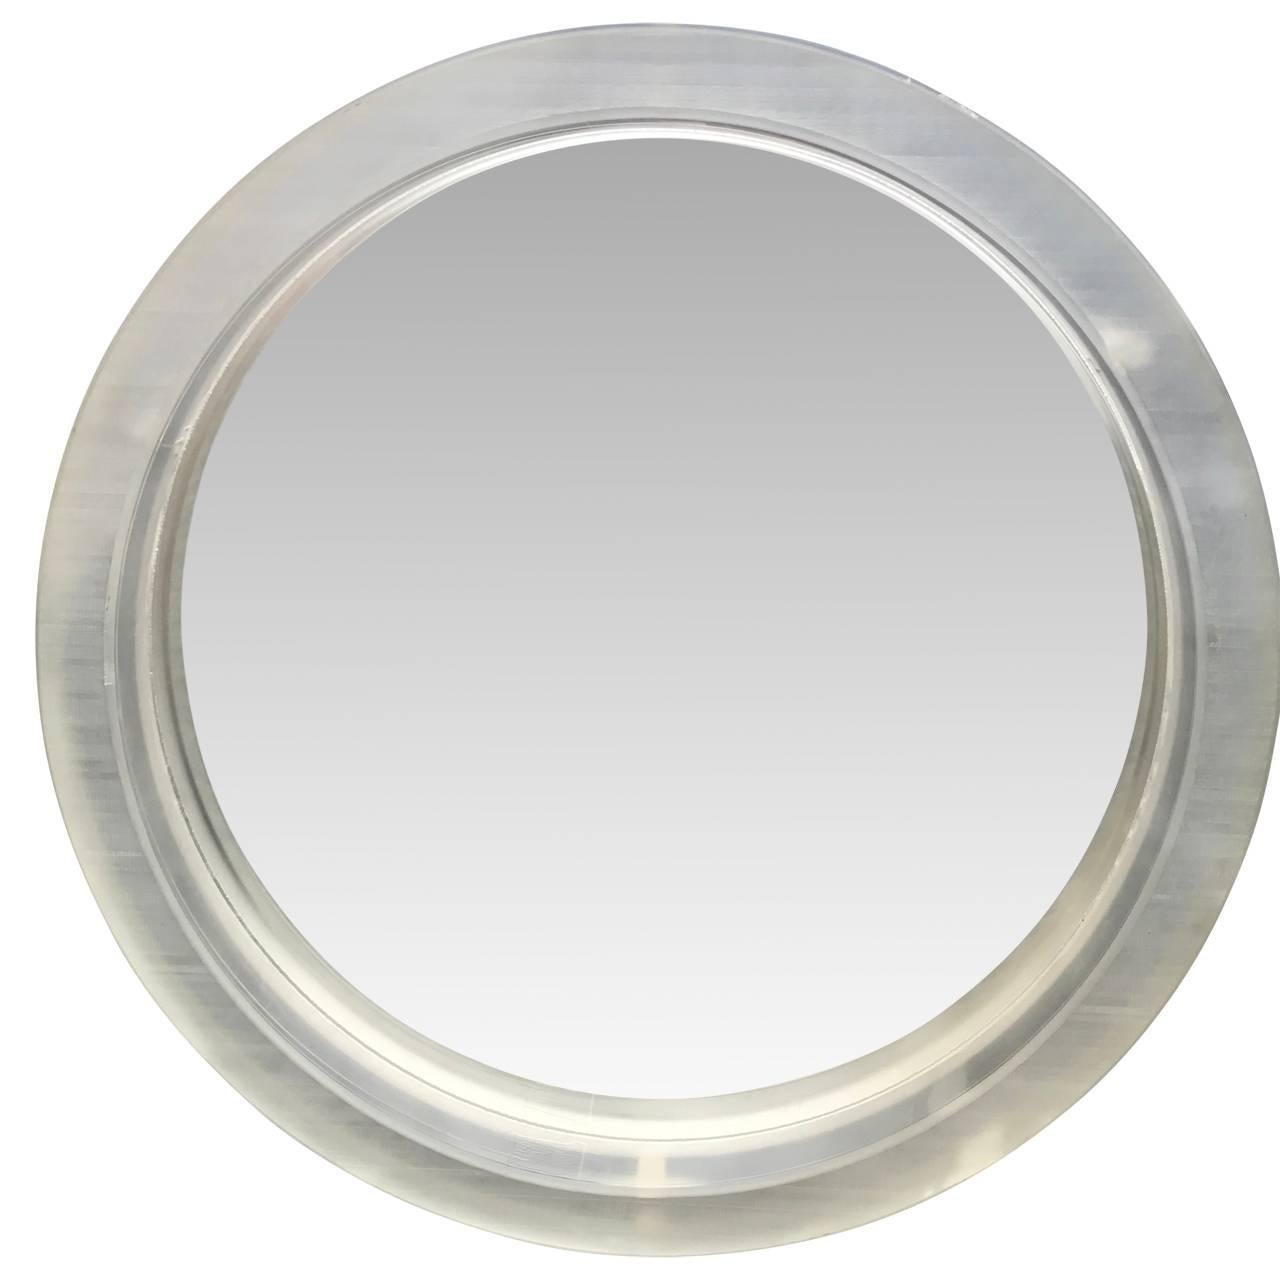 Miroirs circulaires bruts de 3 pouces (7,62 cm) d'épaisseur.
Un seul miroir épais encadré en acrylique ou en lucite. La surface du miroir est rugueuse et individuelle, en raison de sa coupe artisanale. Veuillez demander des images supplémentaires de